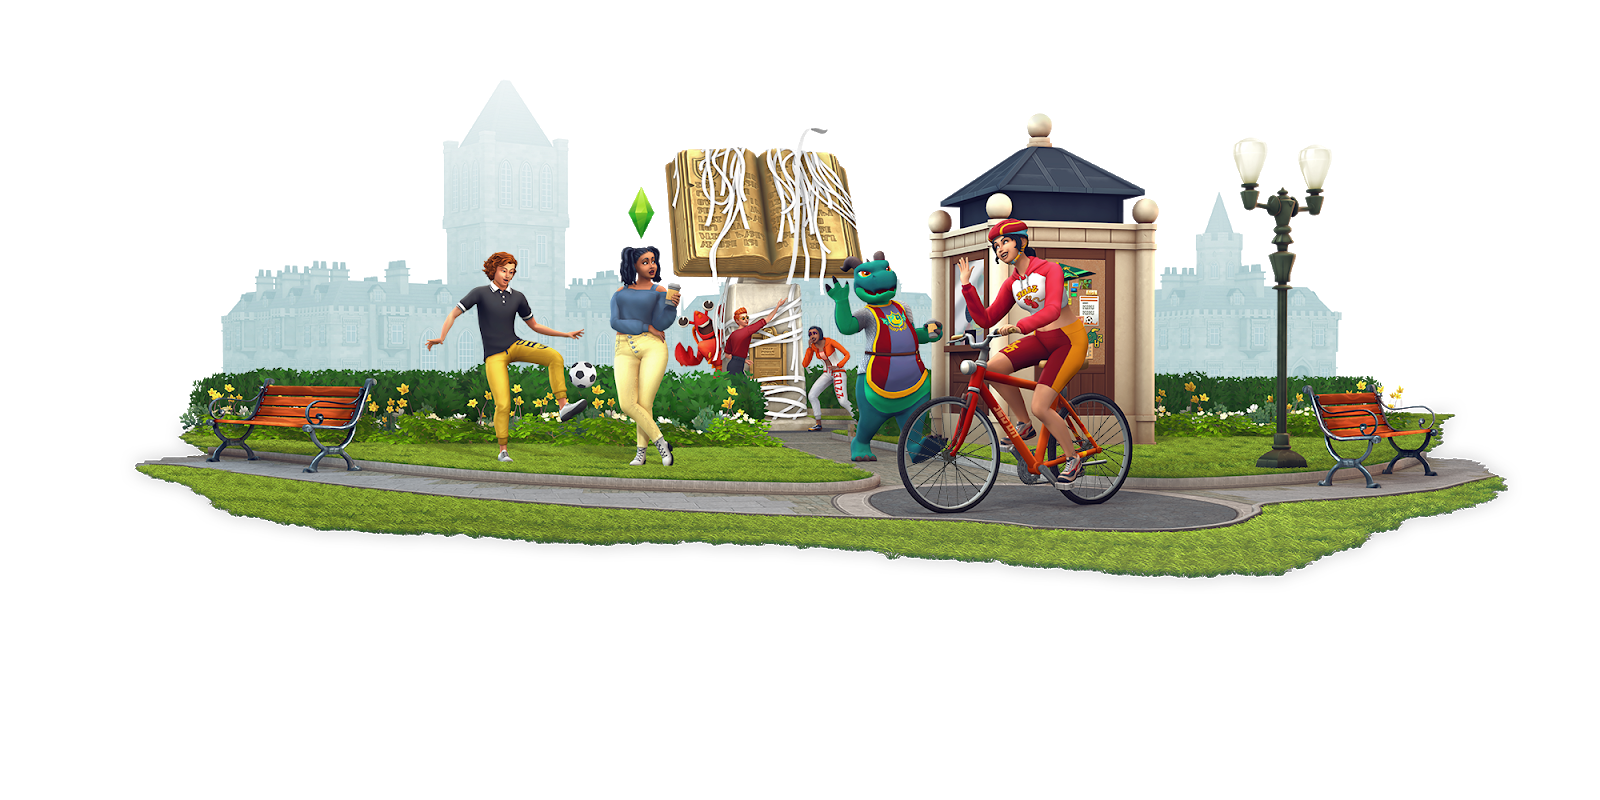 The Sims 4 Vida Universitária: Cartas reais das universidades do jogo são  enviadas para alguns simmers! - Alala Sims